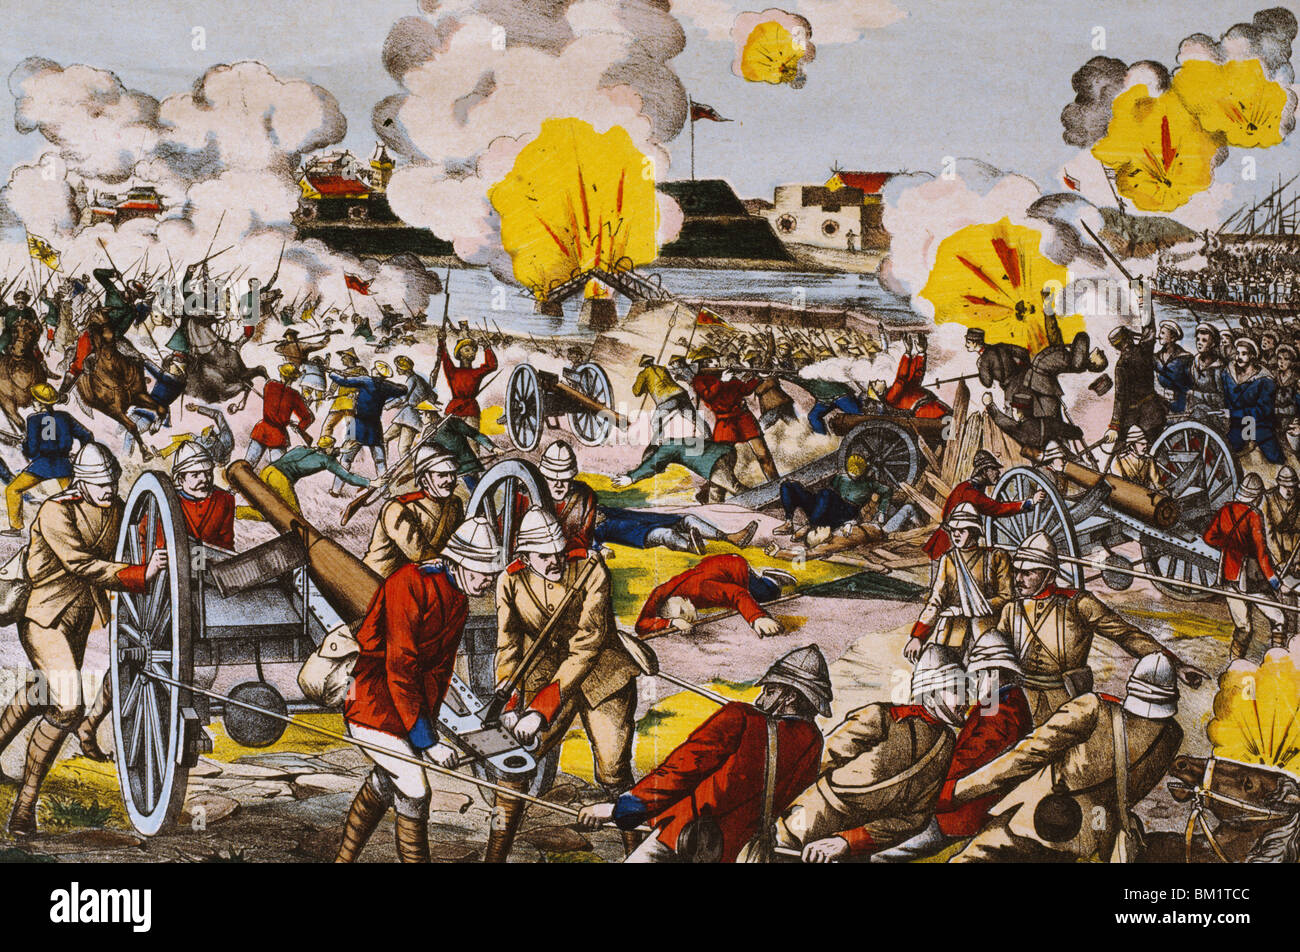 Boxeraufstand: Schlacht von Peitfang, 5. August, Lithographie, Künstler unbekannt, 1900 Stockfoto